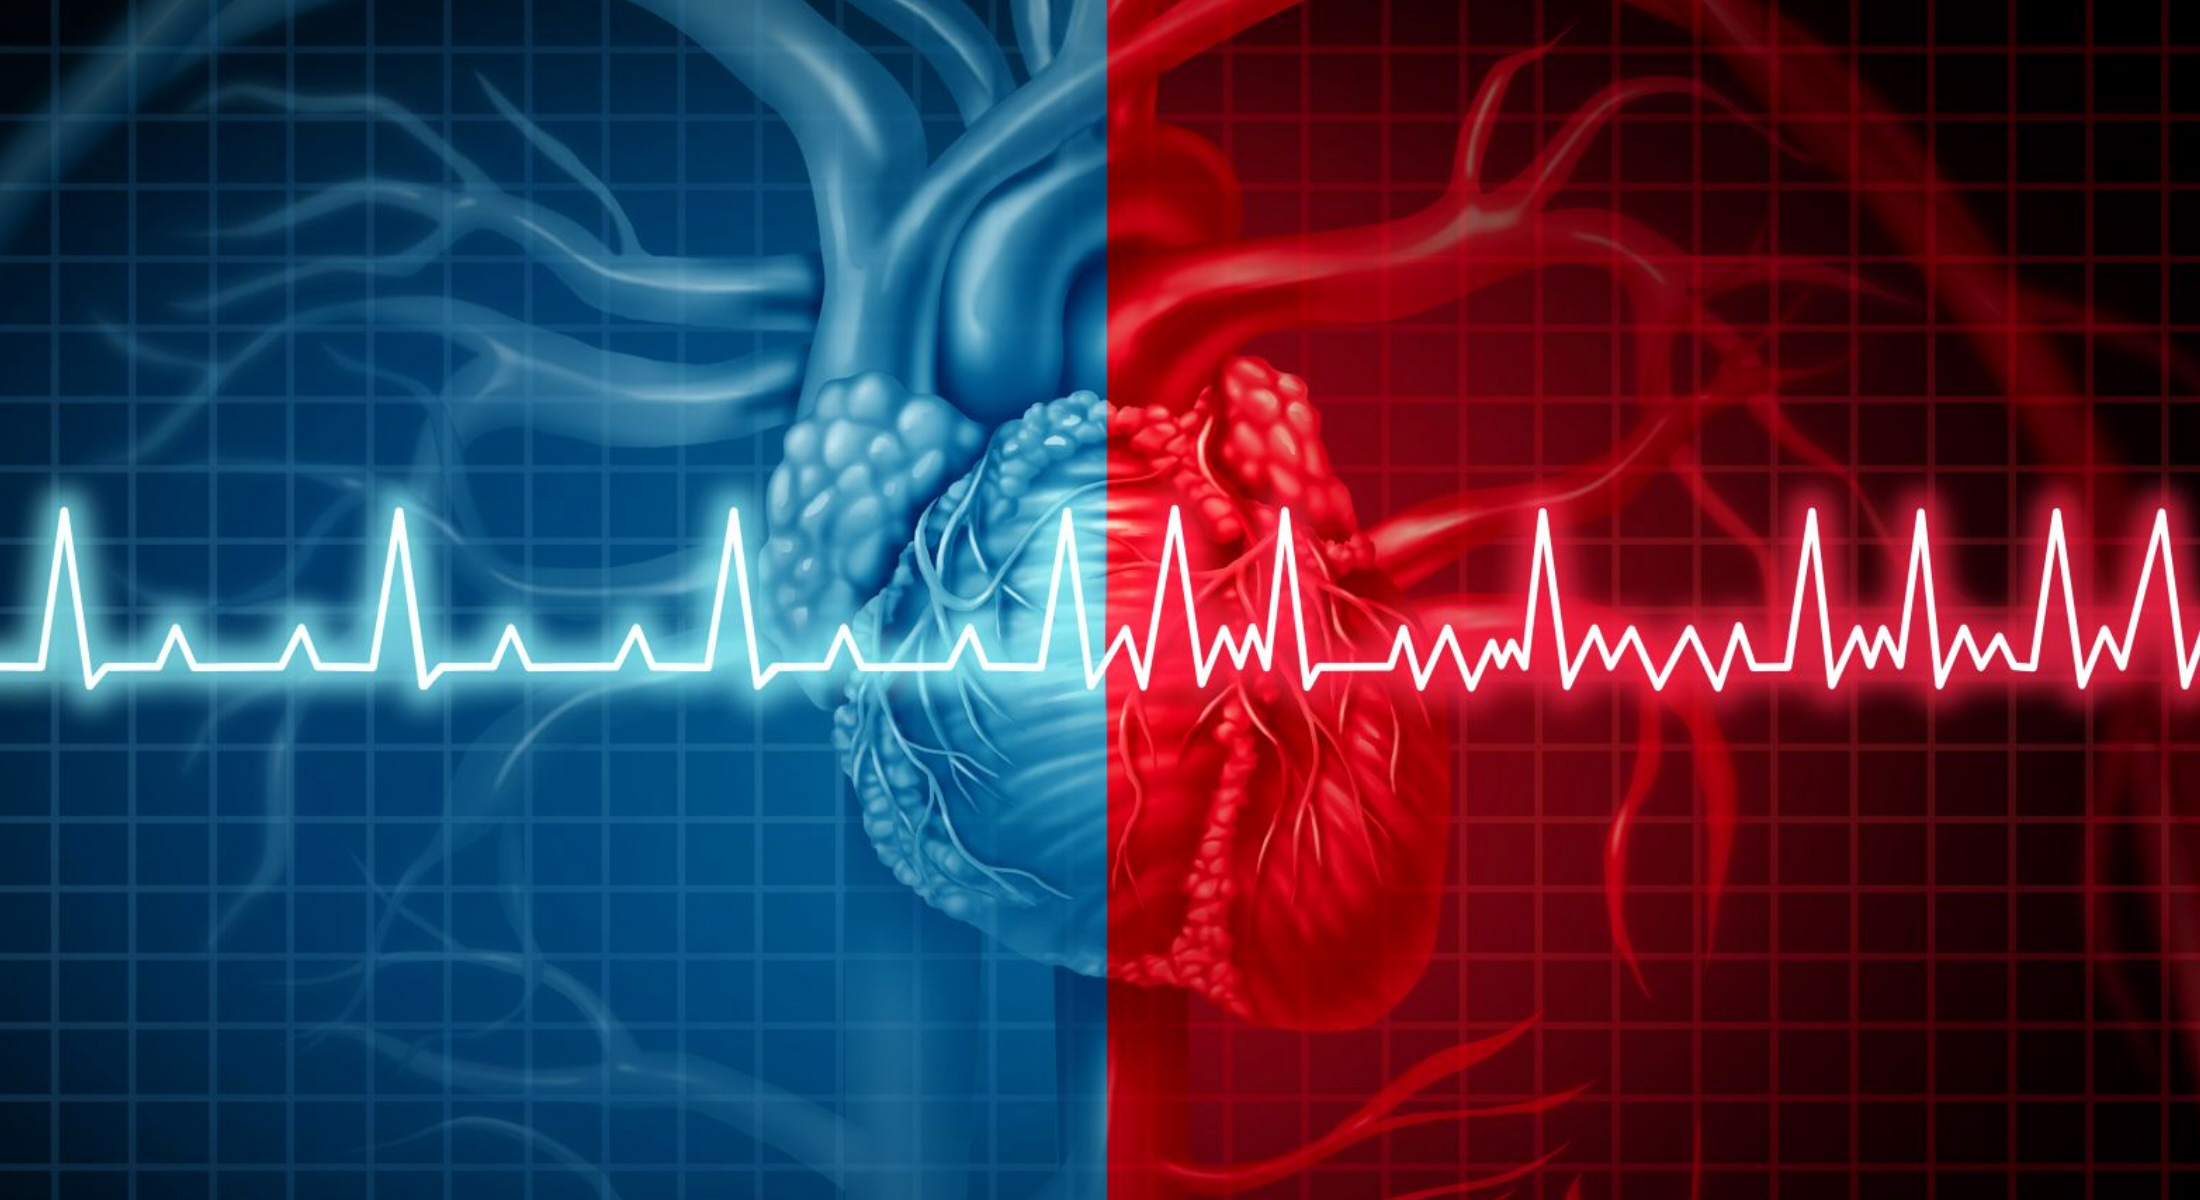 Έλληνας καρδιοχειρουργός στις ΗΠΑ πρωτοπορεί με διπλή επέμβαση καρδιάς